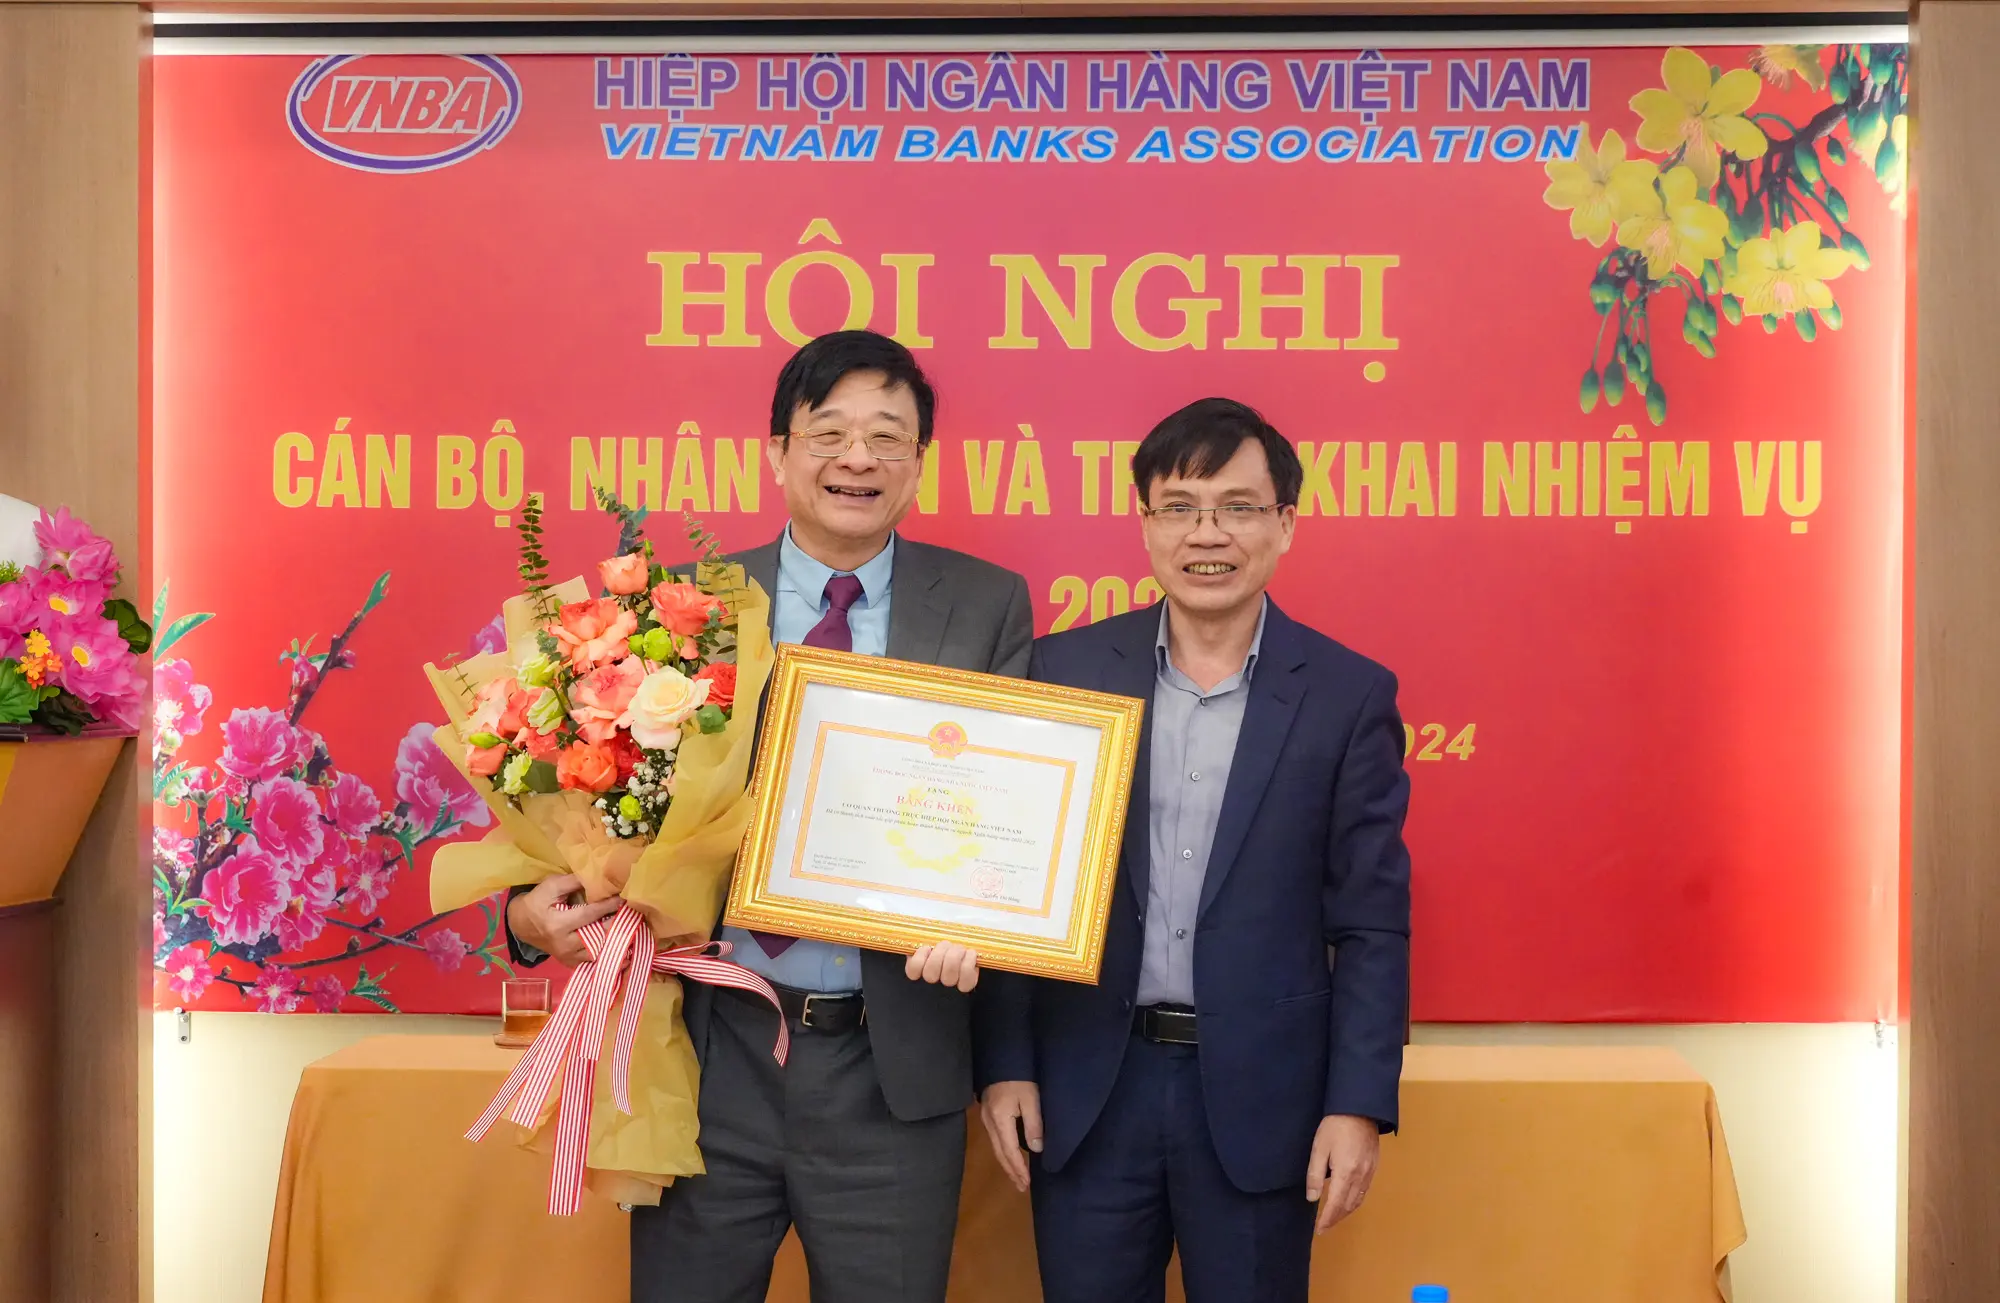 Ông Trần Văn Tần - Phó chủ tịch Hiệp hội Ngân hàng, trao bằng khen của Thống đốc NHNN đến Cơ quan thường trực Hiệp hội Ngân hàng Việt Nam